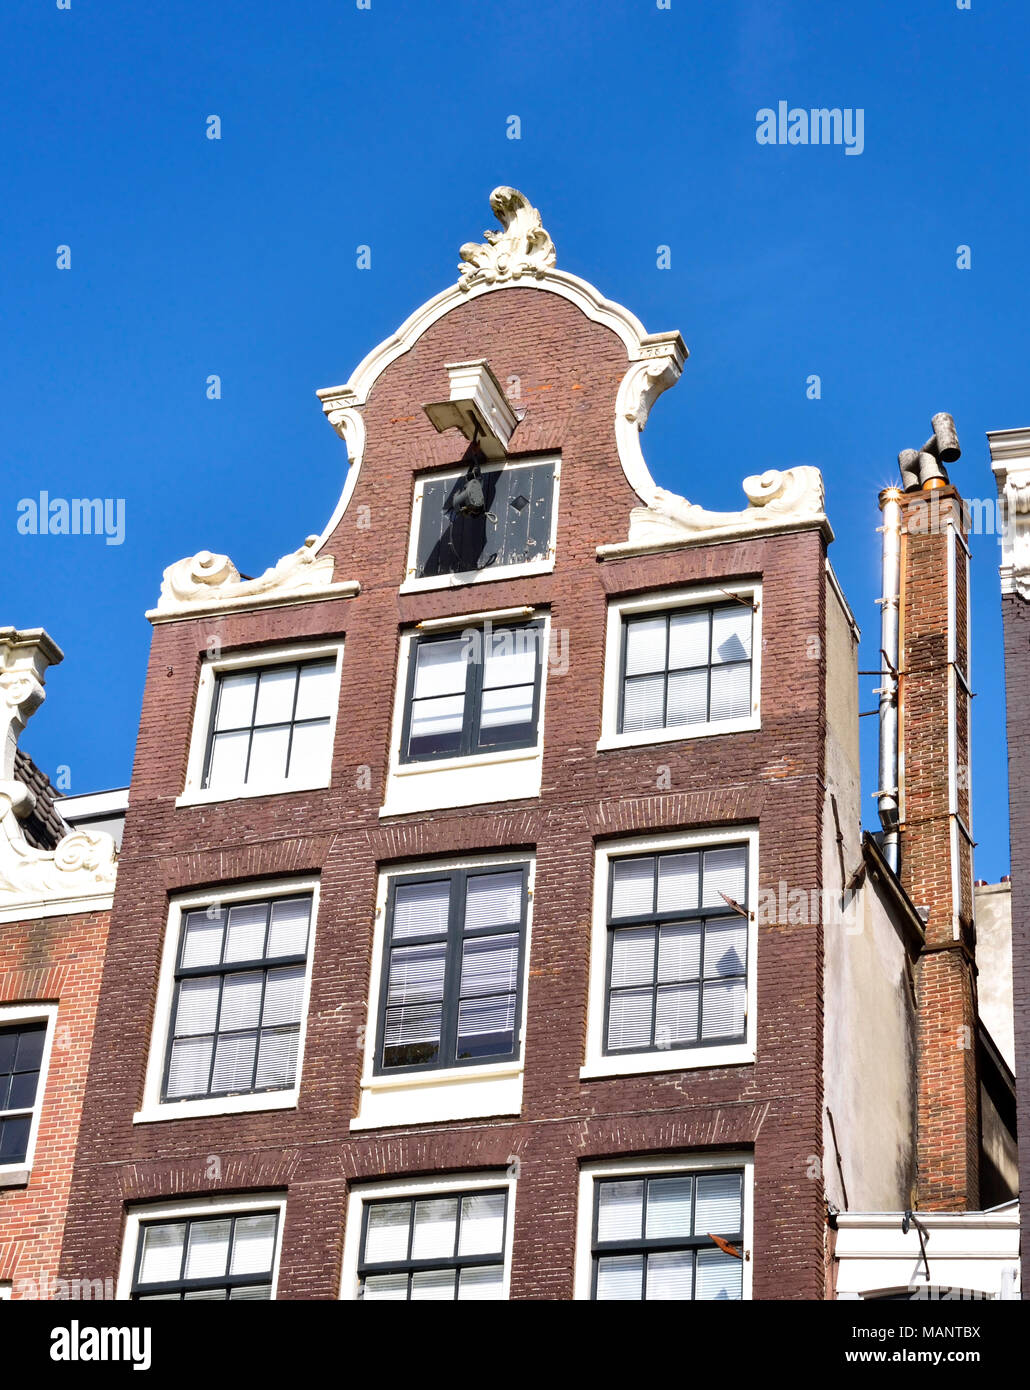 Stadt Häuser in Amsterdam, Niederlande. Außen oder Hausfassade mit blauen Himmel. Stockfoto